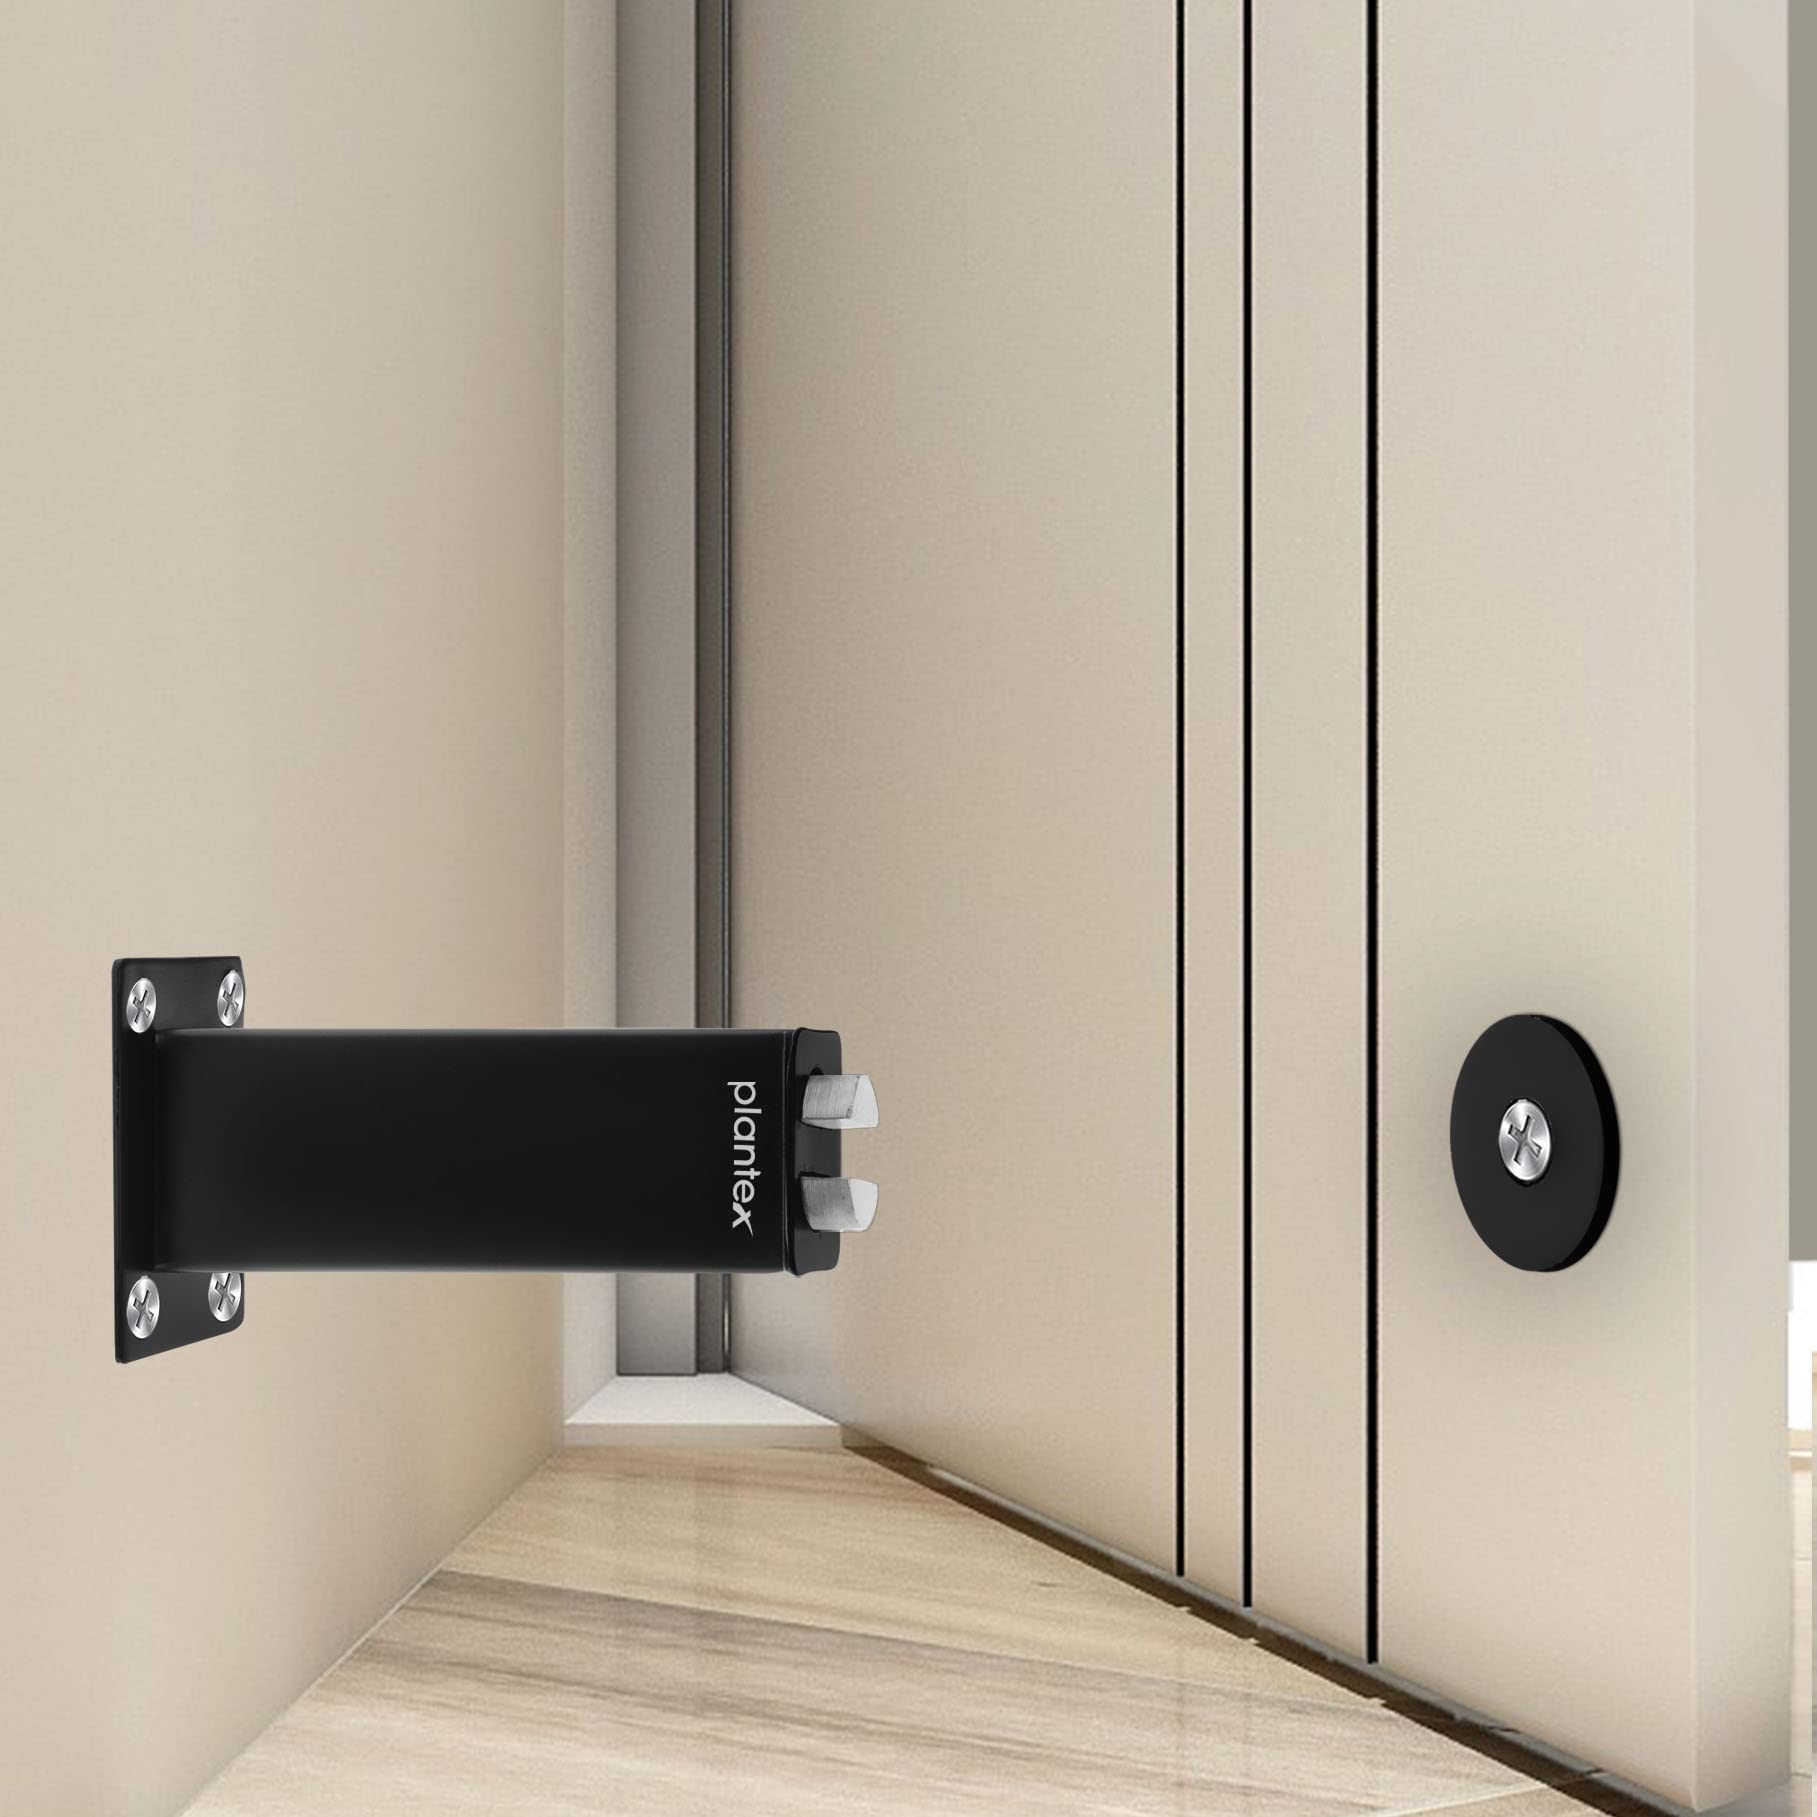 Plantex Stainless Steel 3 inch Square Door Magnet/Door Stopper/Door Catcher for Home/Office/Hotel - Pack of 1 (APS-1118-Black)